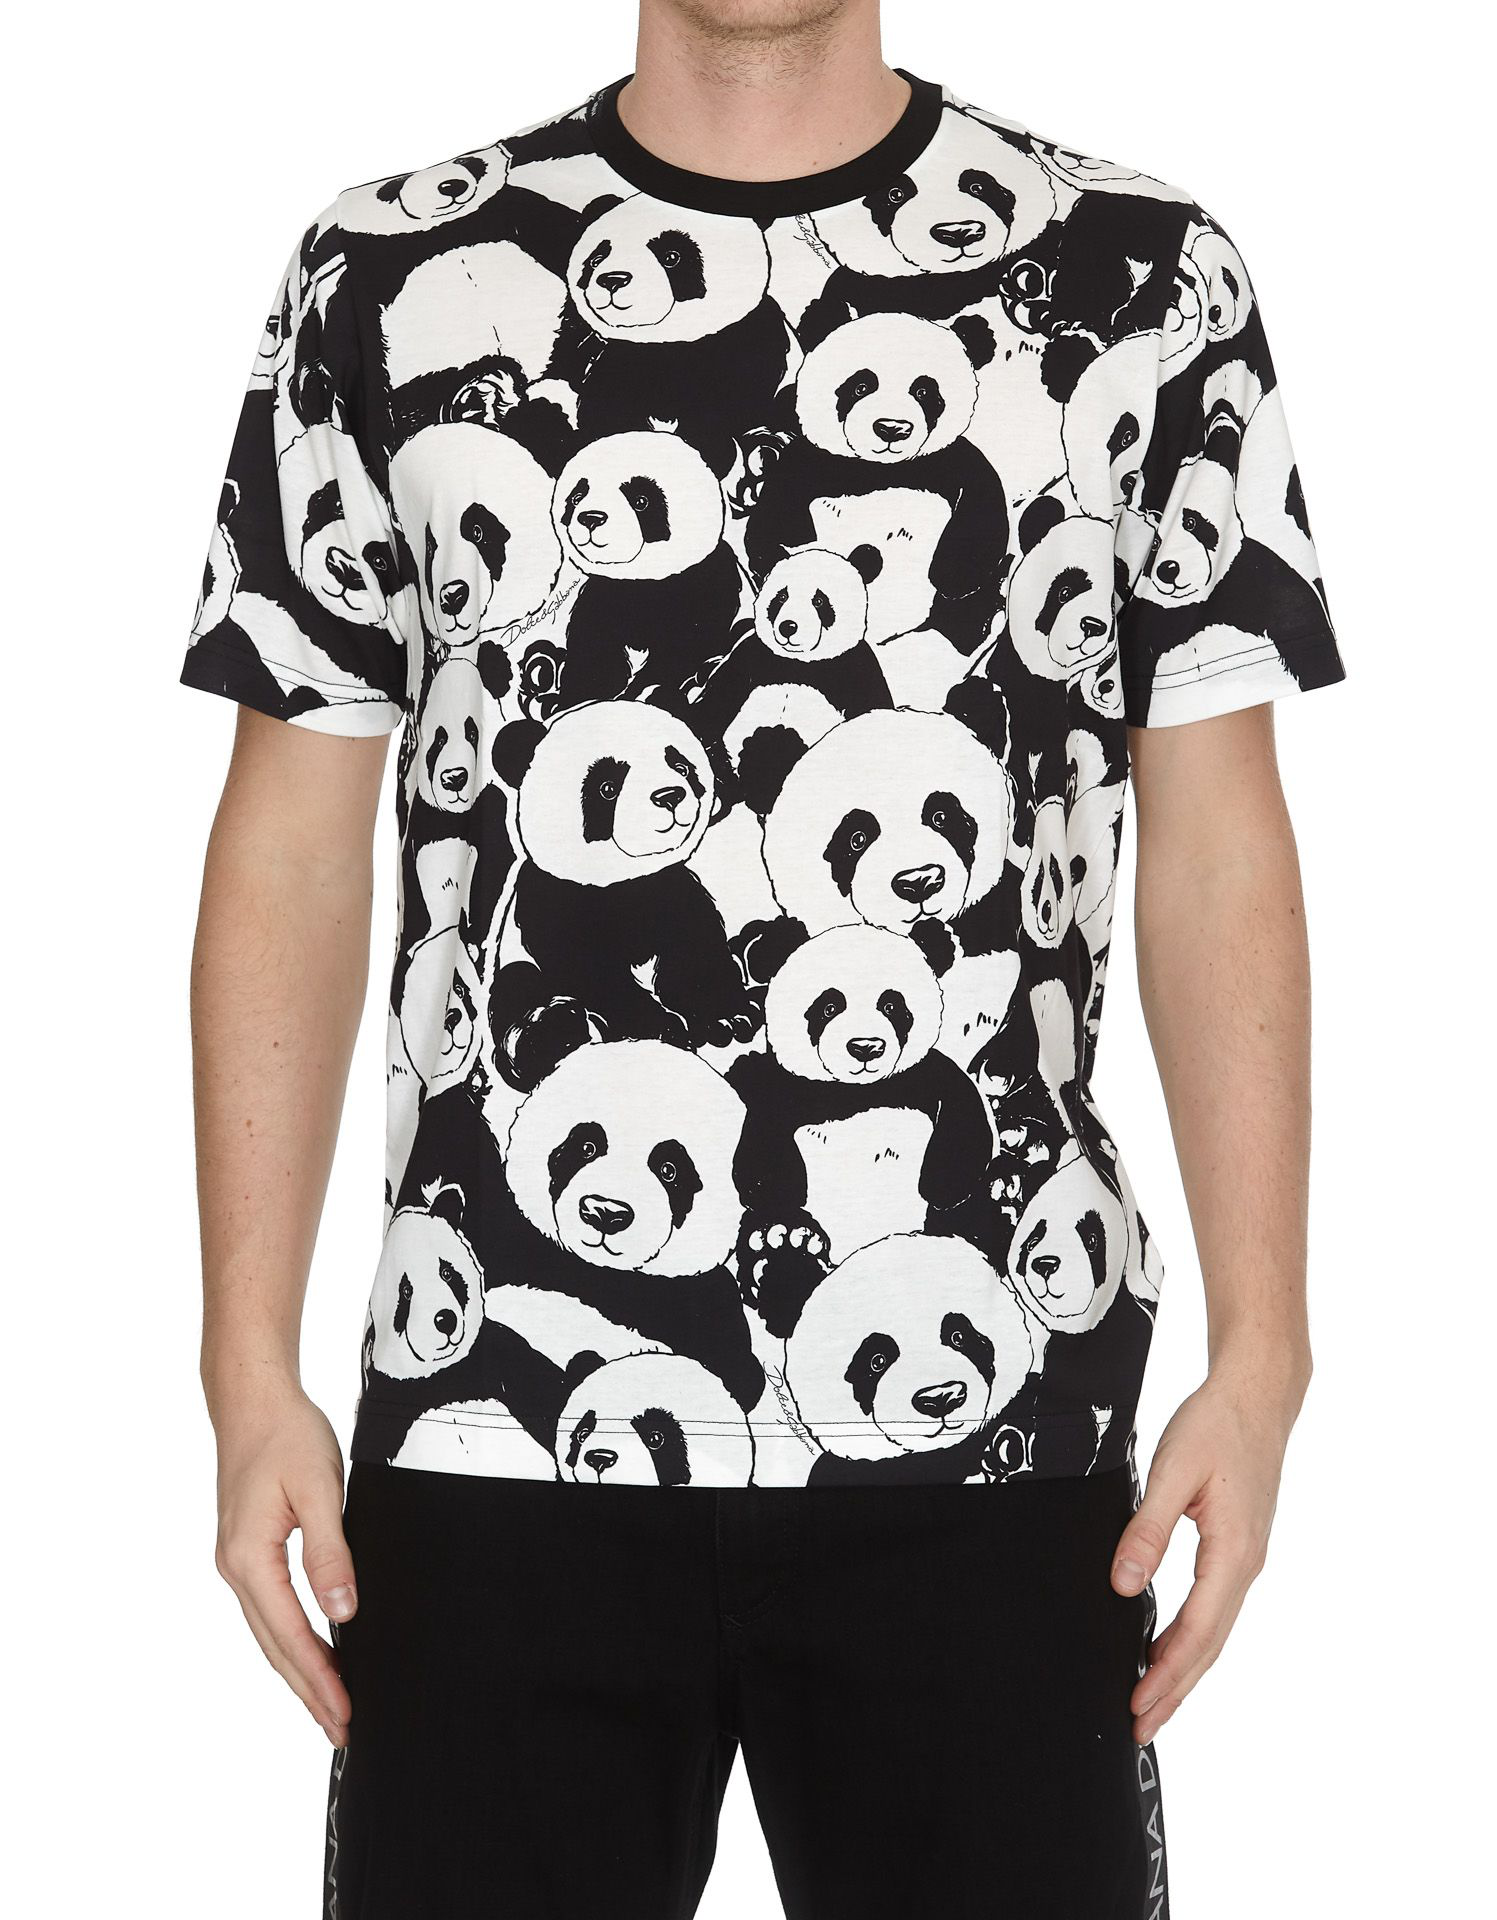 dolce gabbana t shirt panda